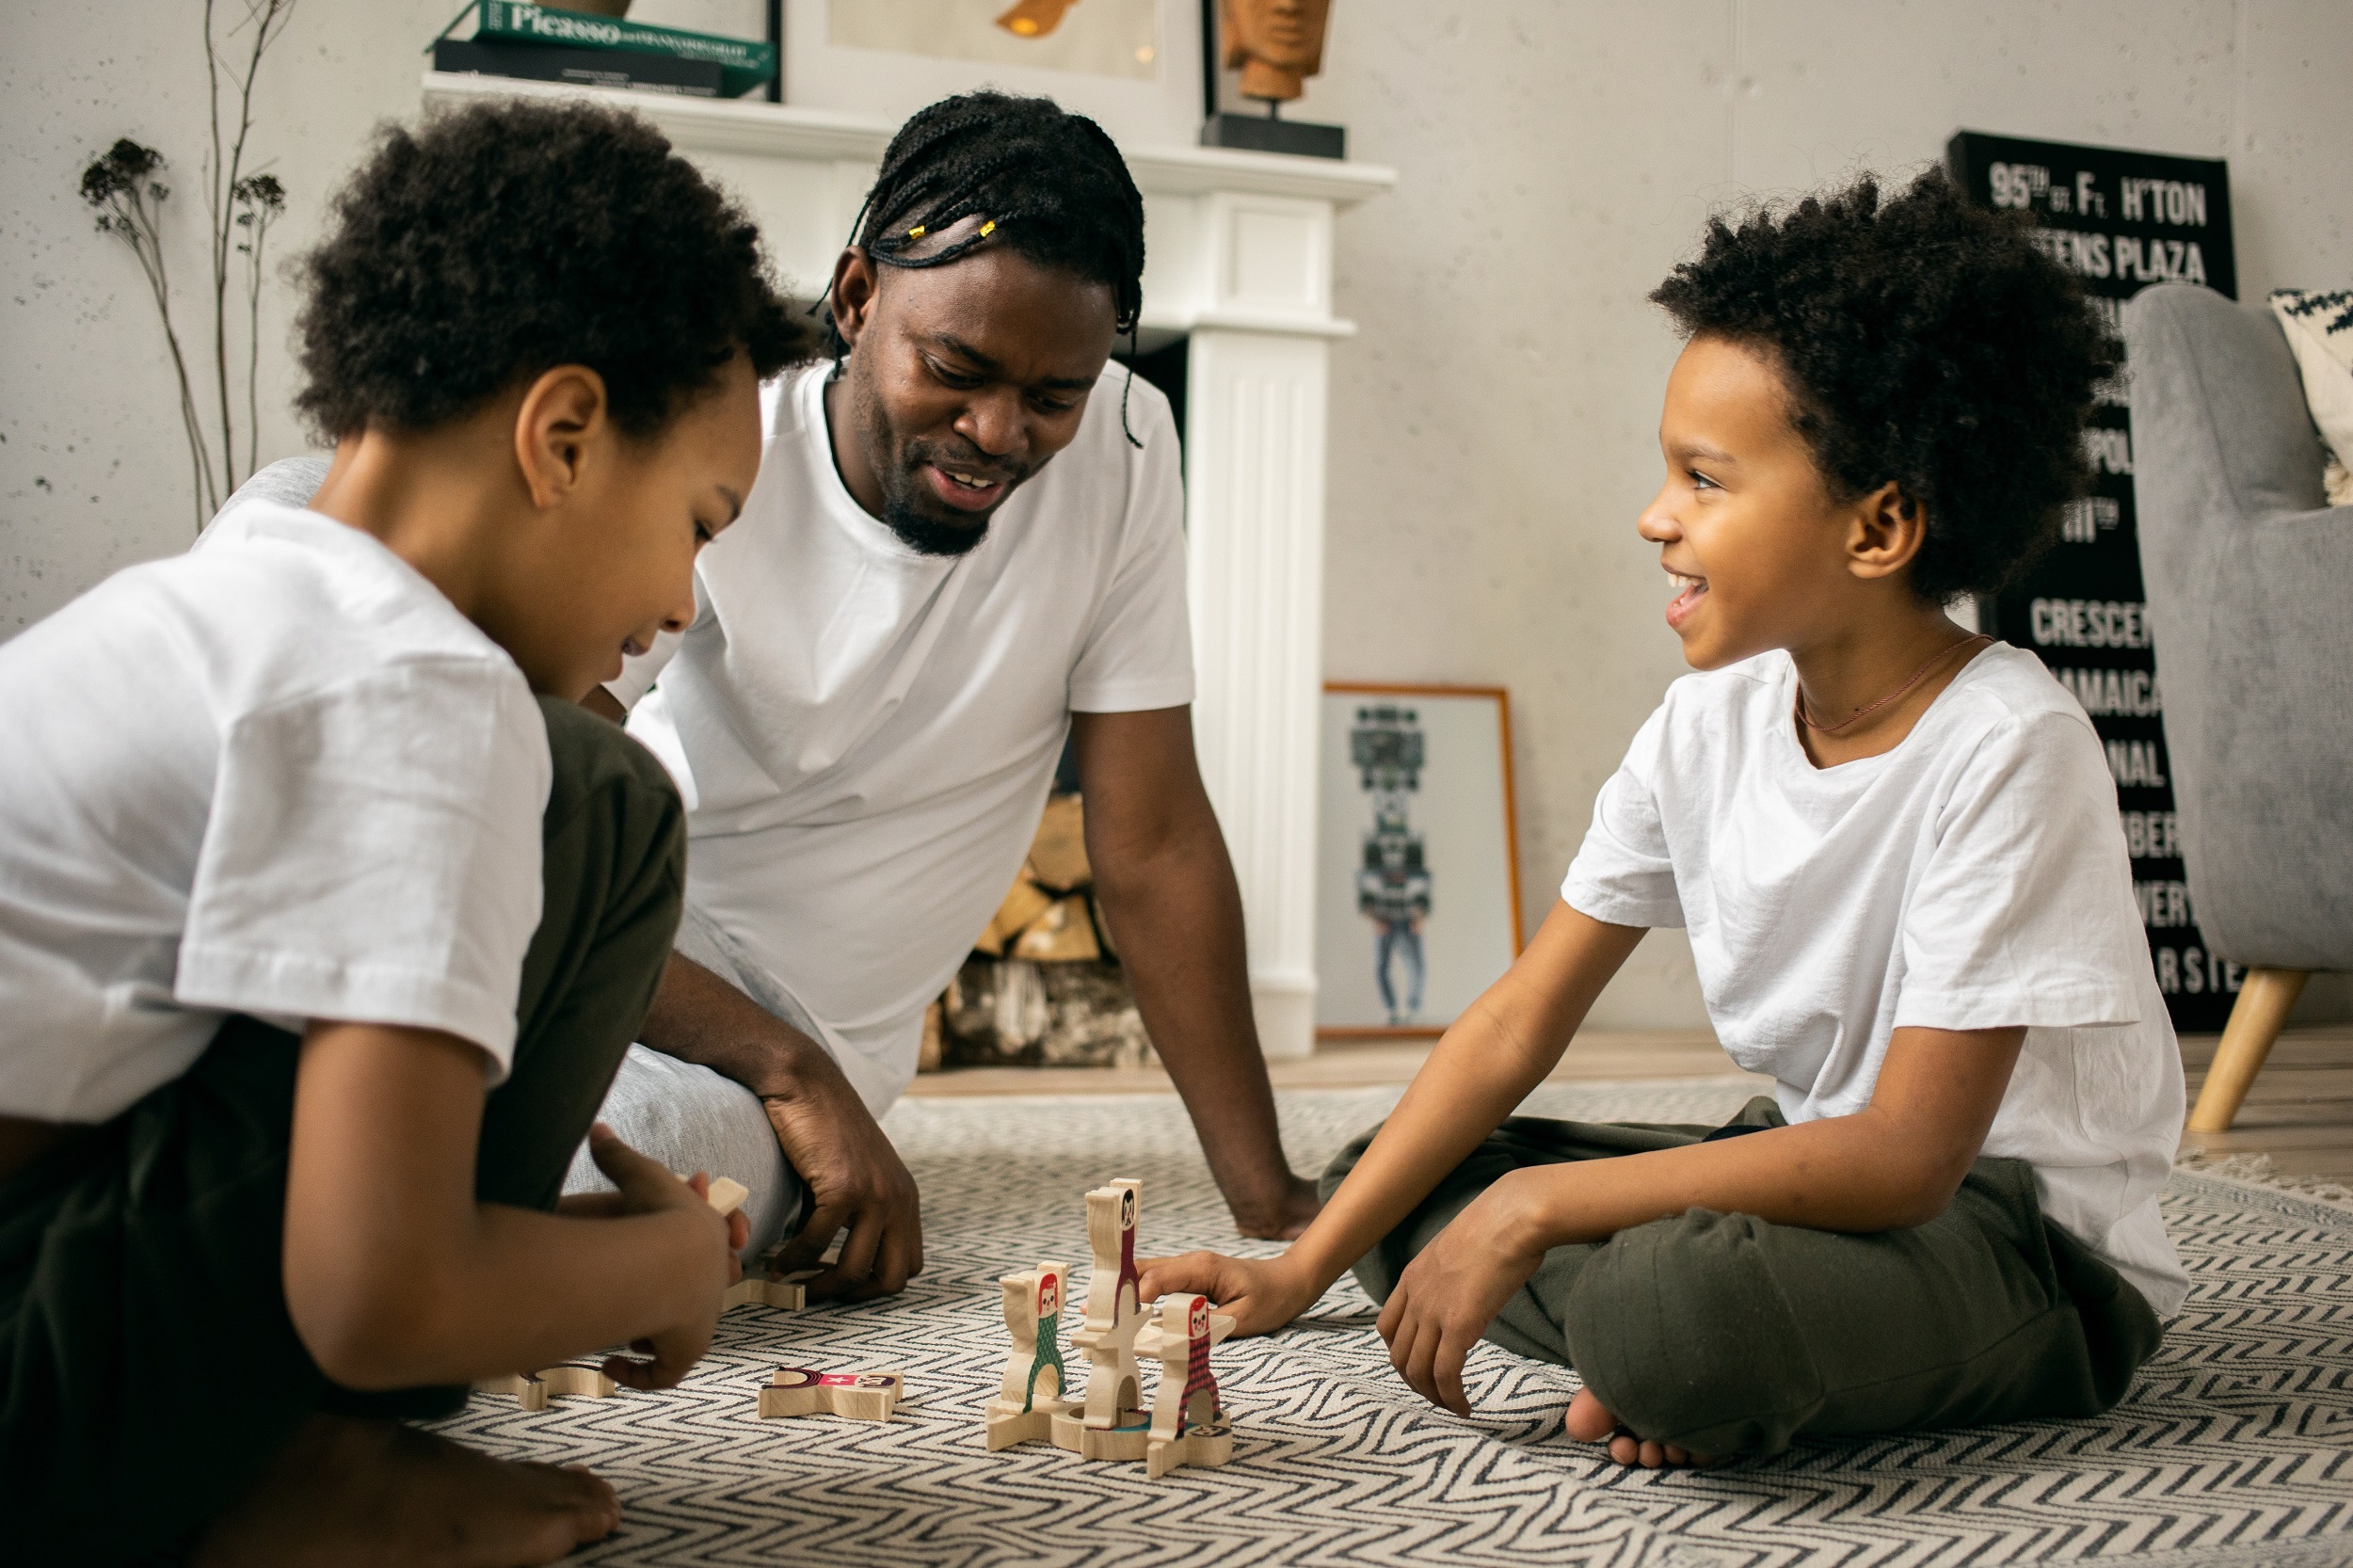 homem negro sentado no chão com dois jovens afros jogando um jogo